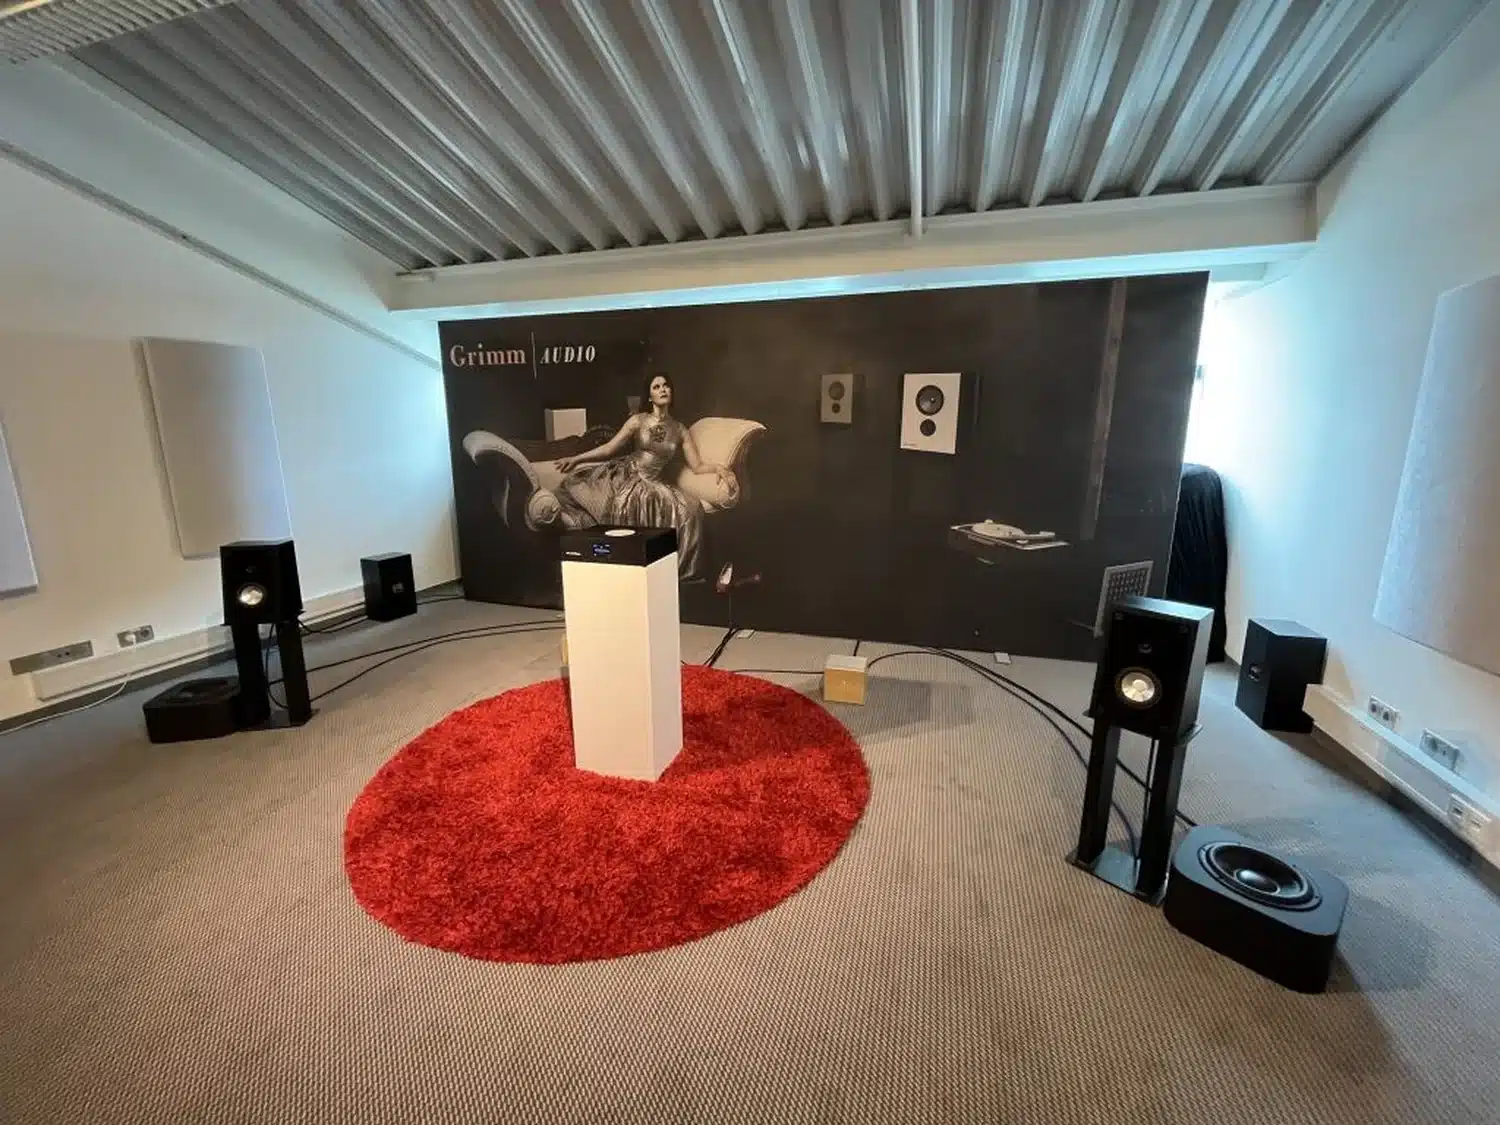 Salle d'écoute au Salon de Munich 2023 avec tapis rouge, deux enceintes noires avec caisson Grimm Audio SB1, une fresque murale pour présenter le MU2 en avant-première (par 1877.audio)